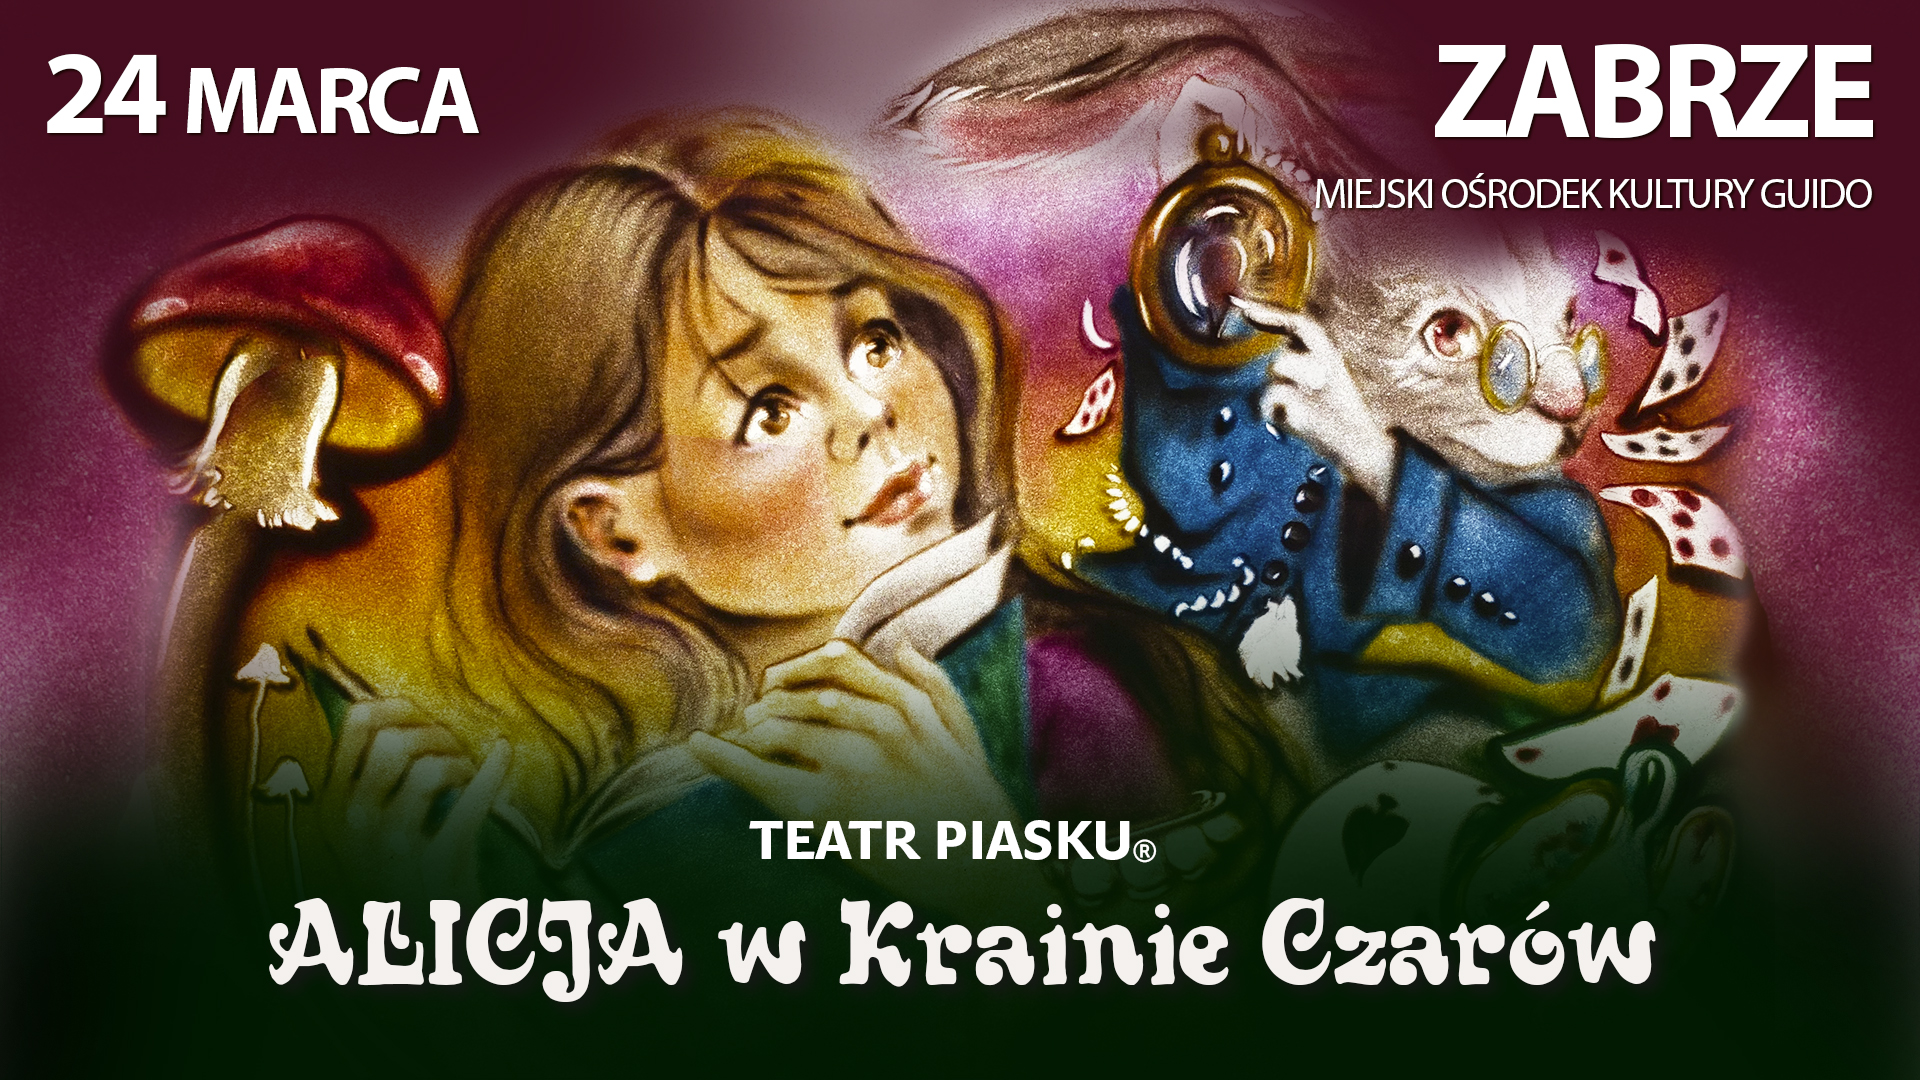 baner promujący spektakl Alicja w krainie czarów, dziewczynka, królik, karty